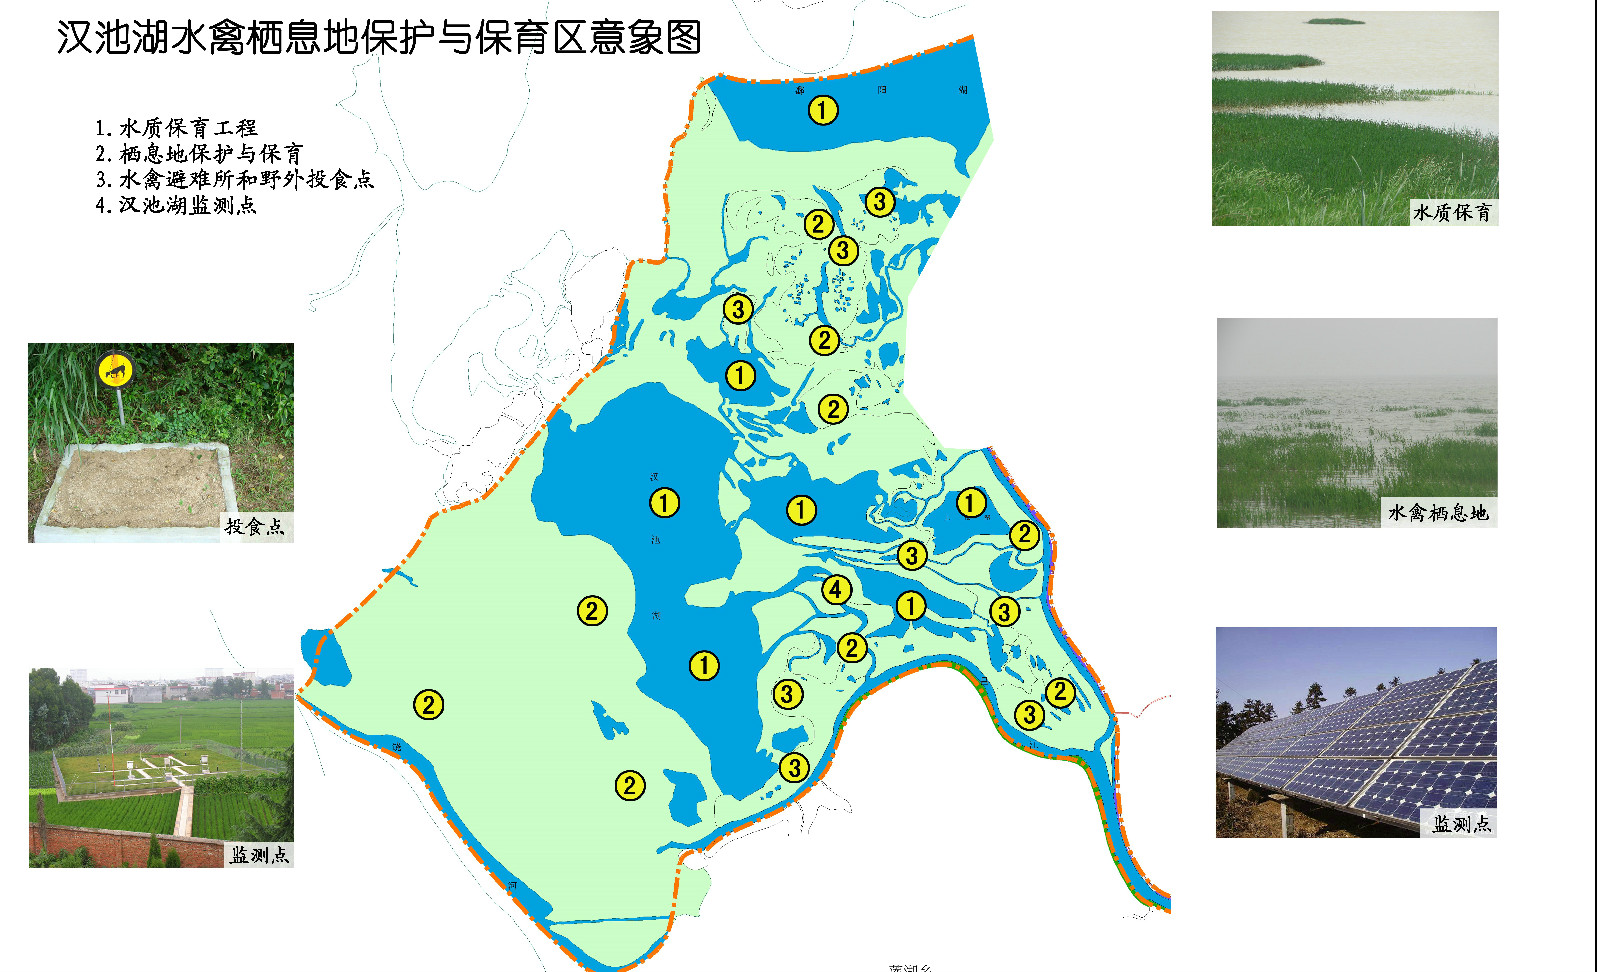 漢池湖水禽棲息地保護與保育區